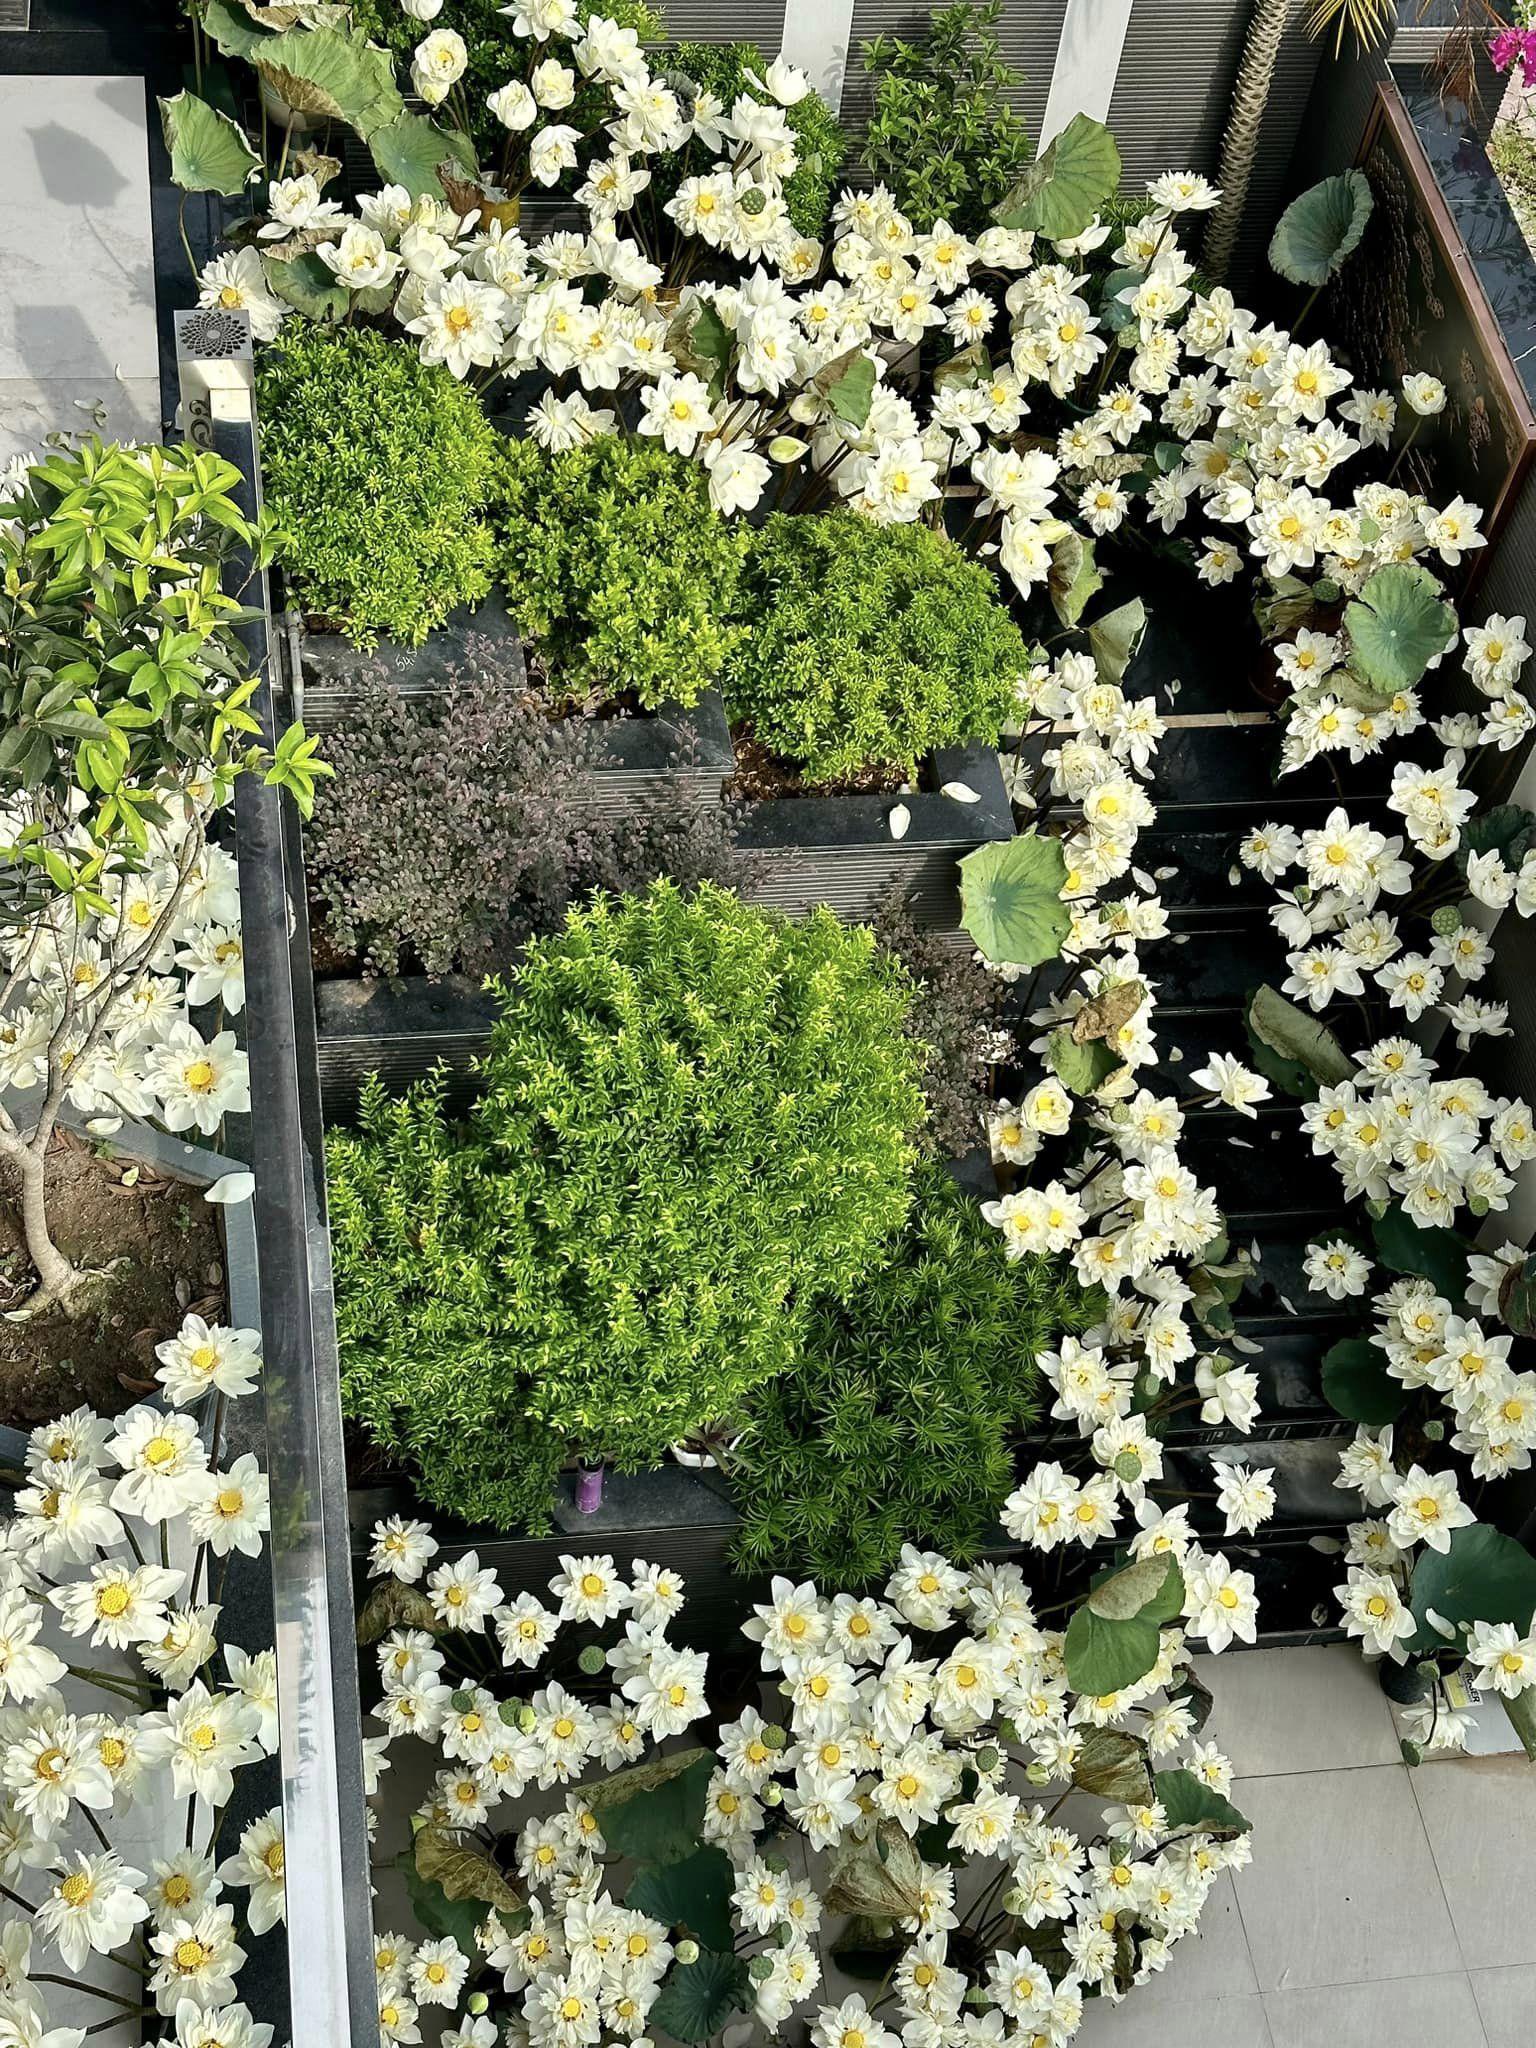 Vào mùa hoa sen năm ngoái, chị Quỳnh Liên cũng cùng hai cô bạn thân cắm 700 bông sen bạch liên dọc cầu thang và ban công. Chị phải dùng tới 60 cái bình, 40 viên xốp và rất nhiều lá, cặm cụi cắm trong 4 tiếng thì hoàn thành. 